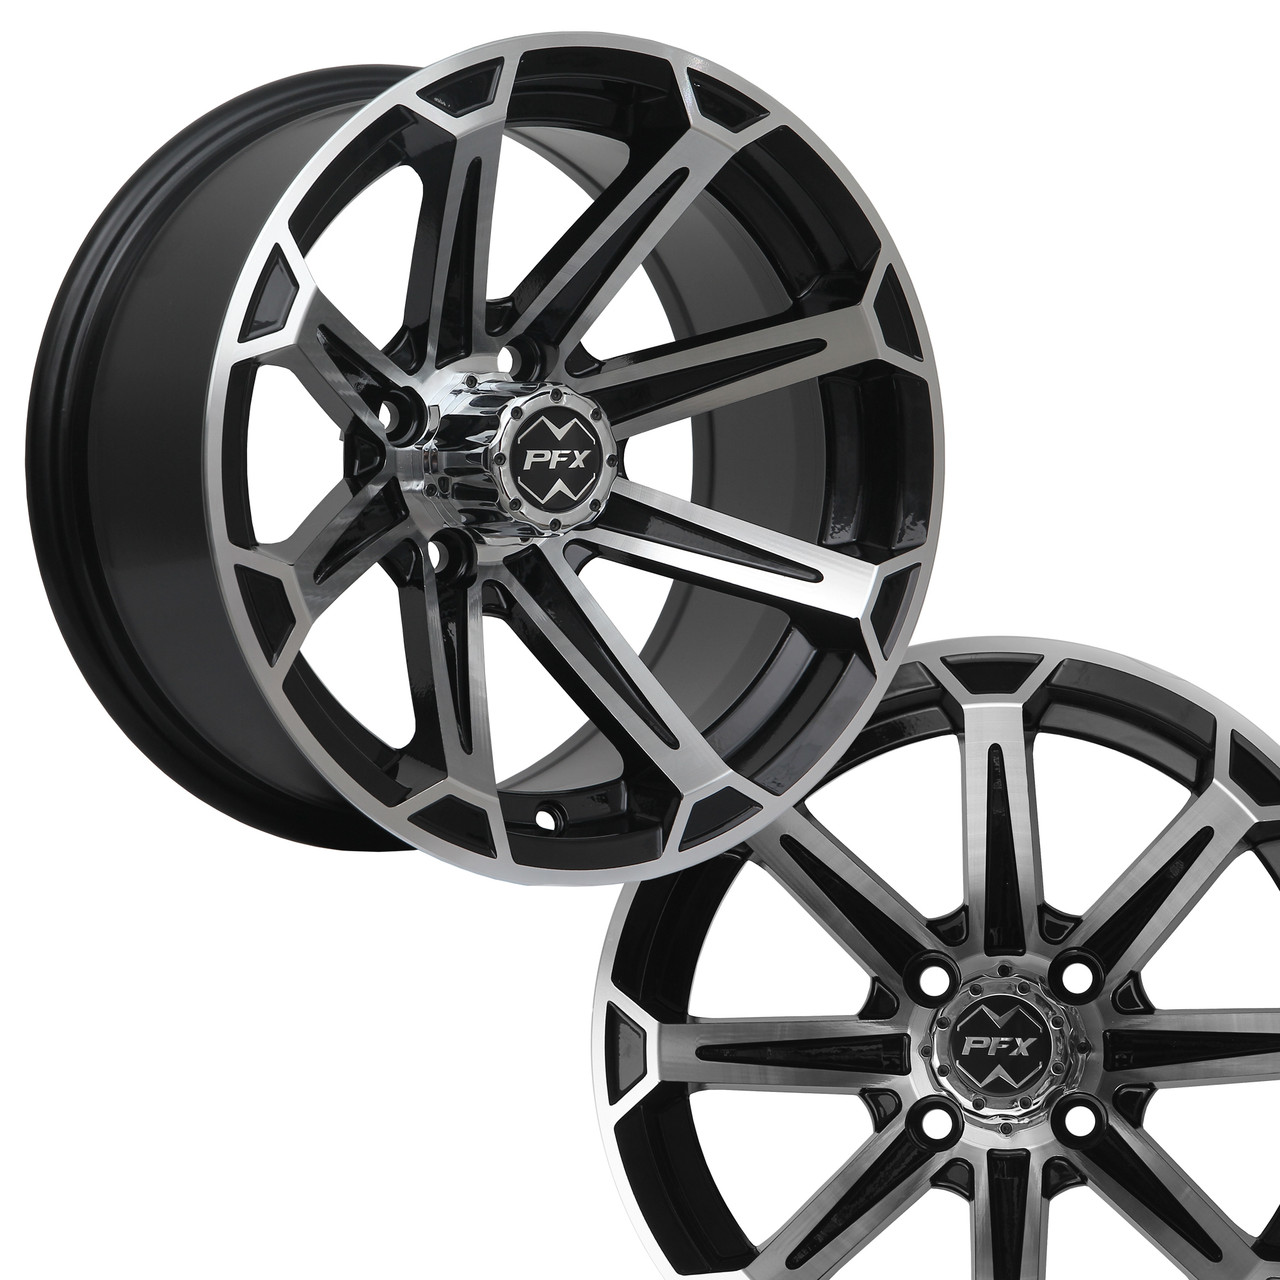 14" VORTEX Machined/Black Wheels on 205/30-14 Fusion Street Tires - Warranty & Watermark